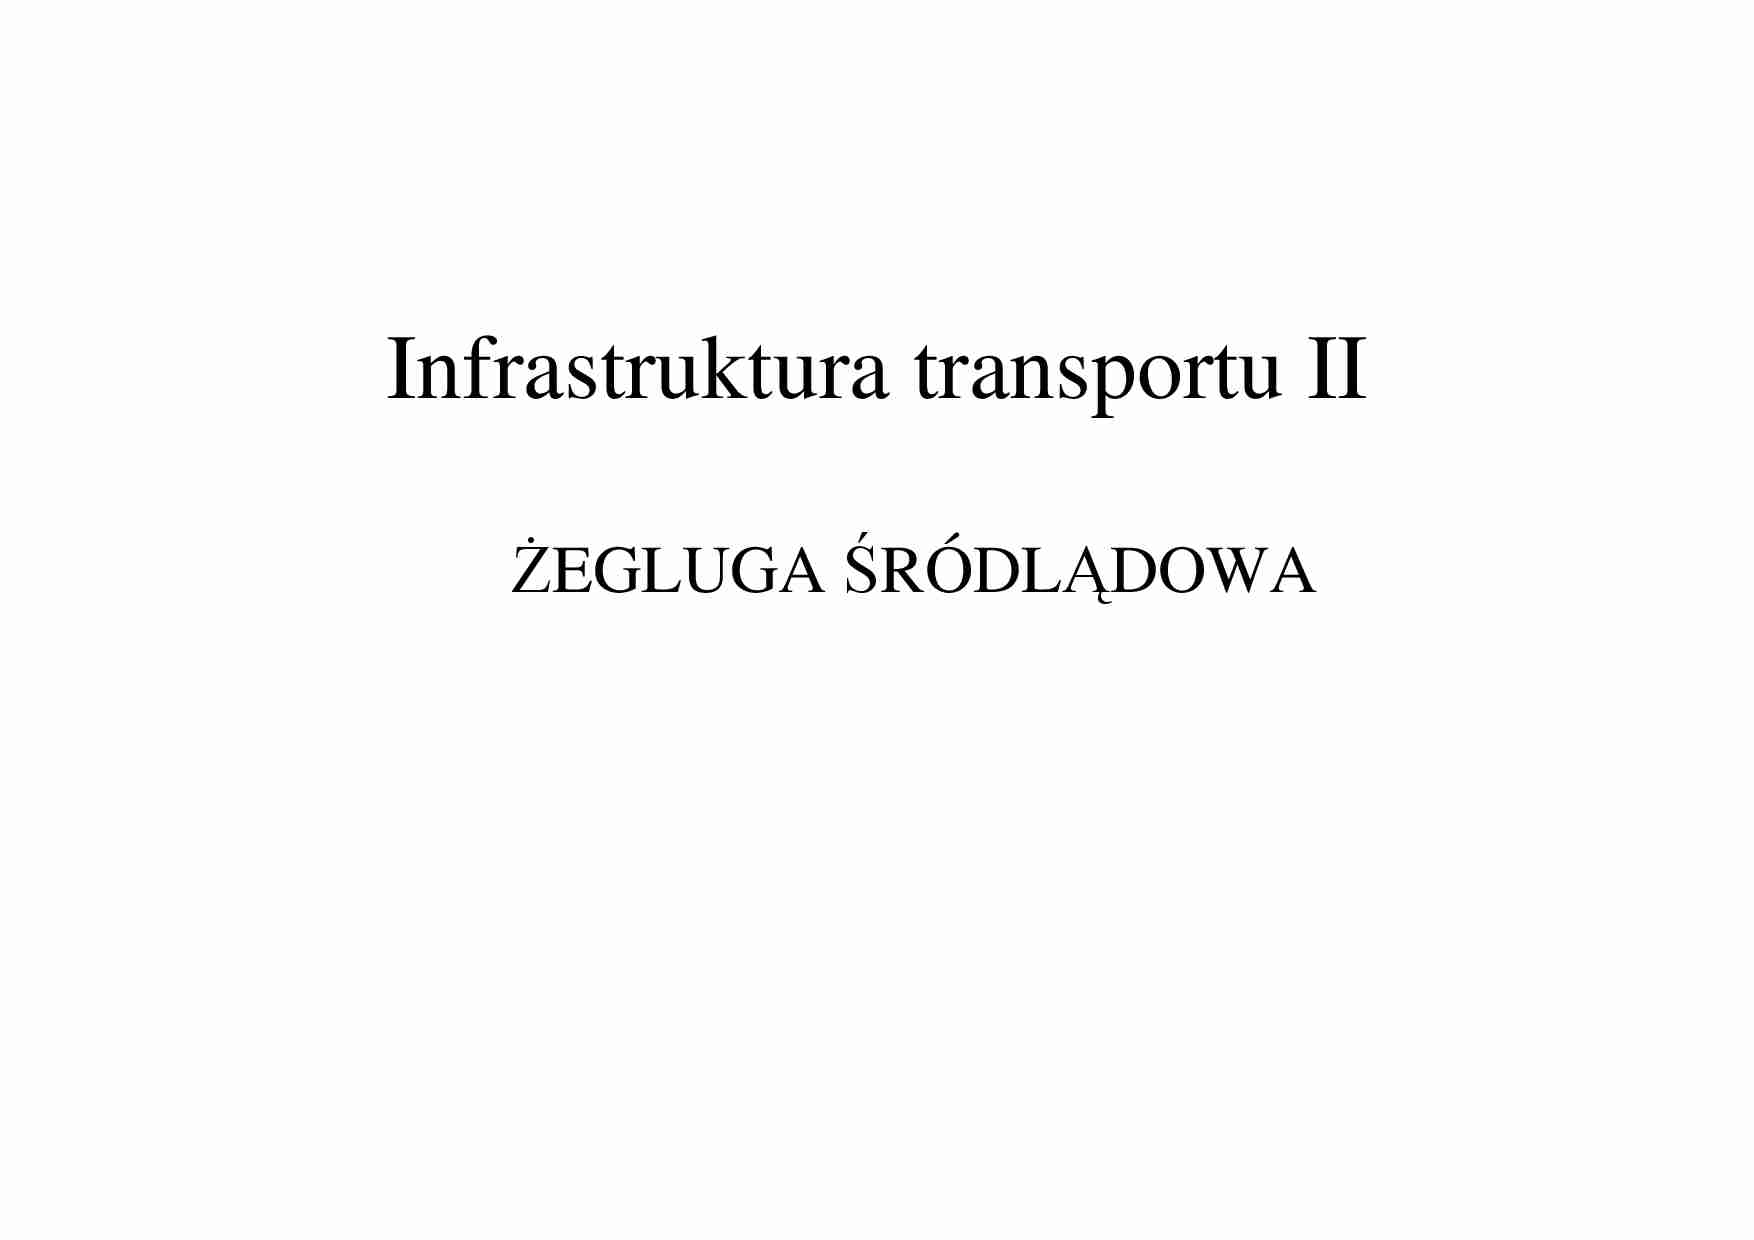 Infrastruktura transportu-żegluga śródlądowa - strona 1